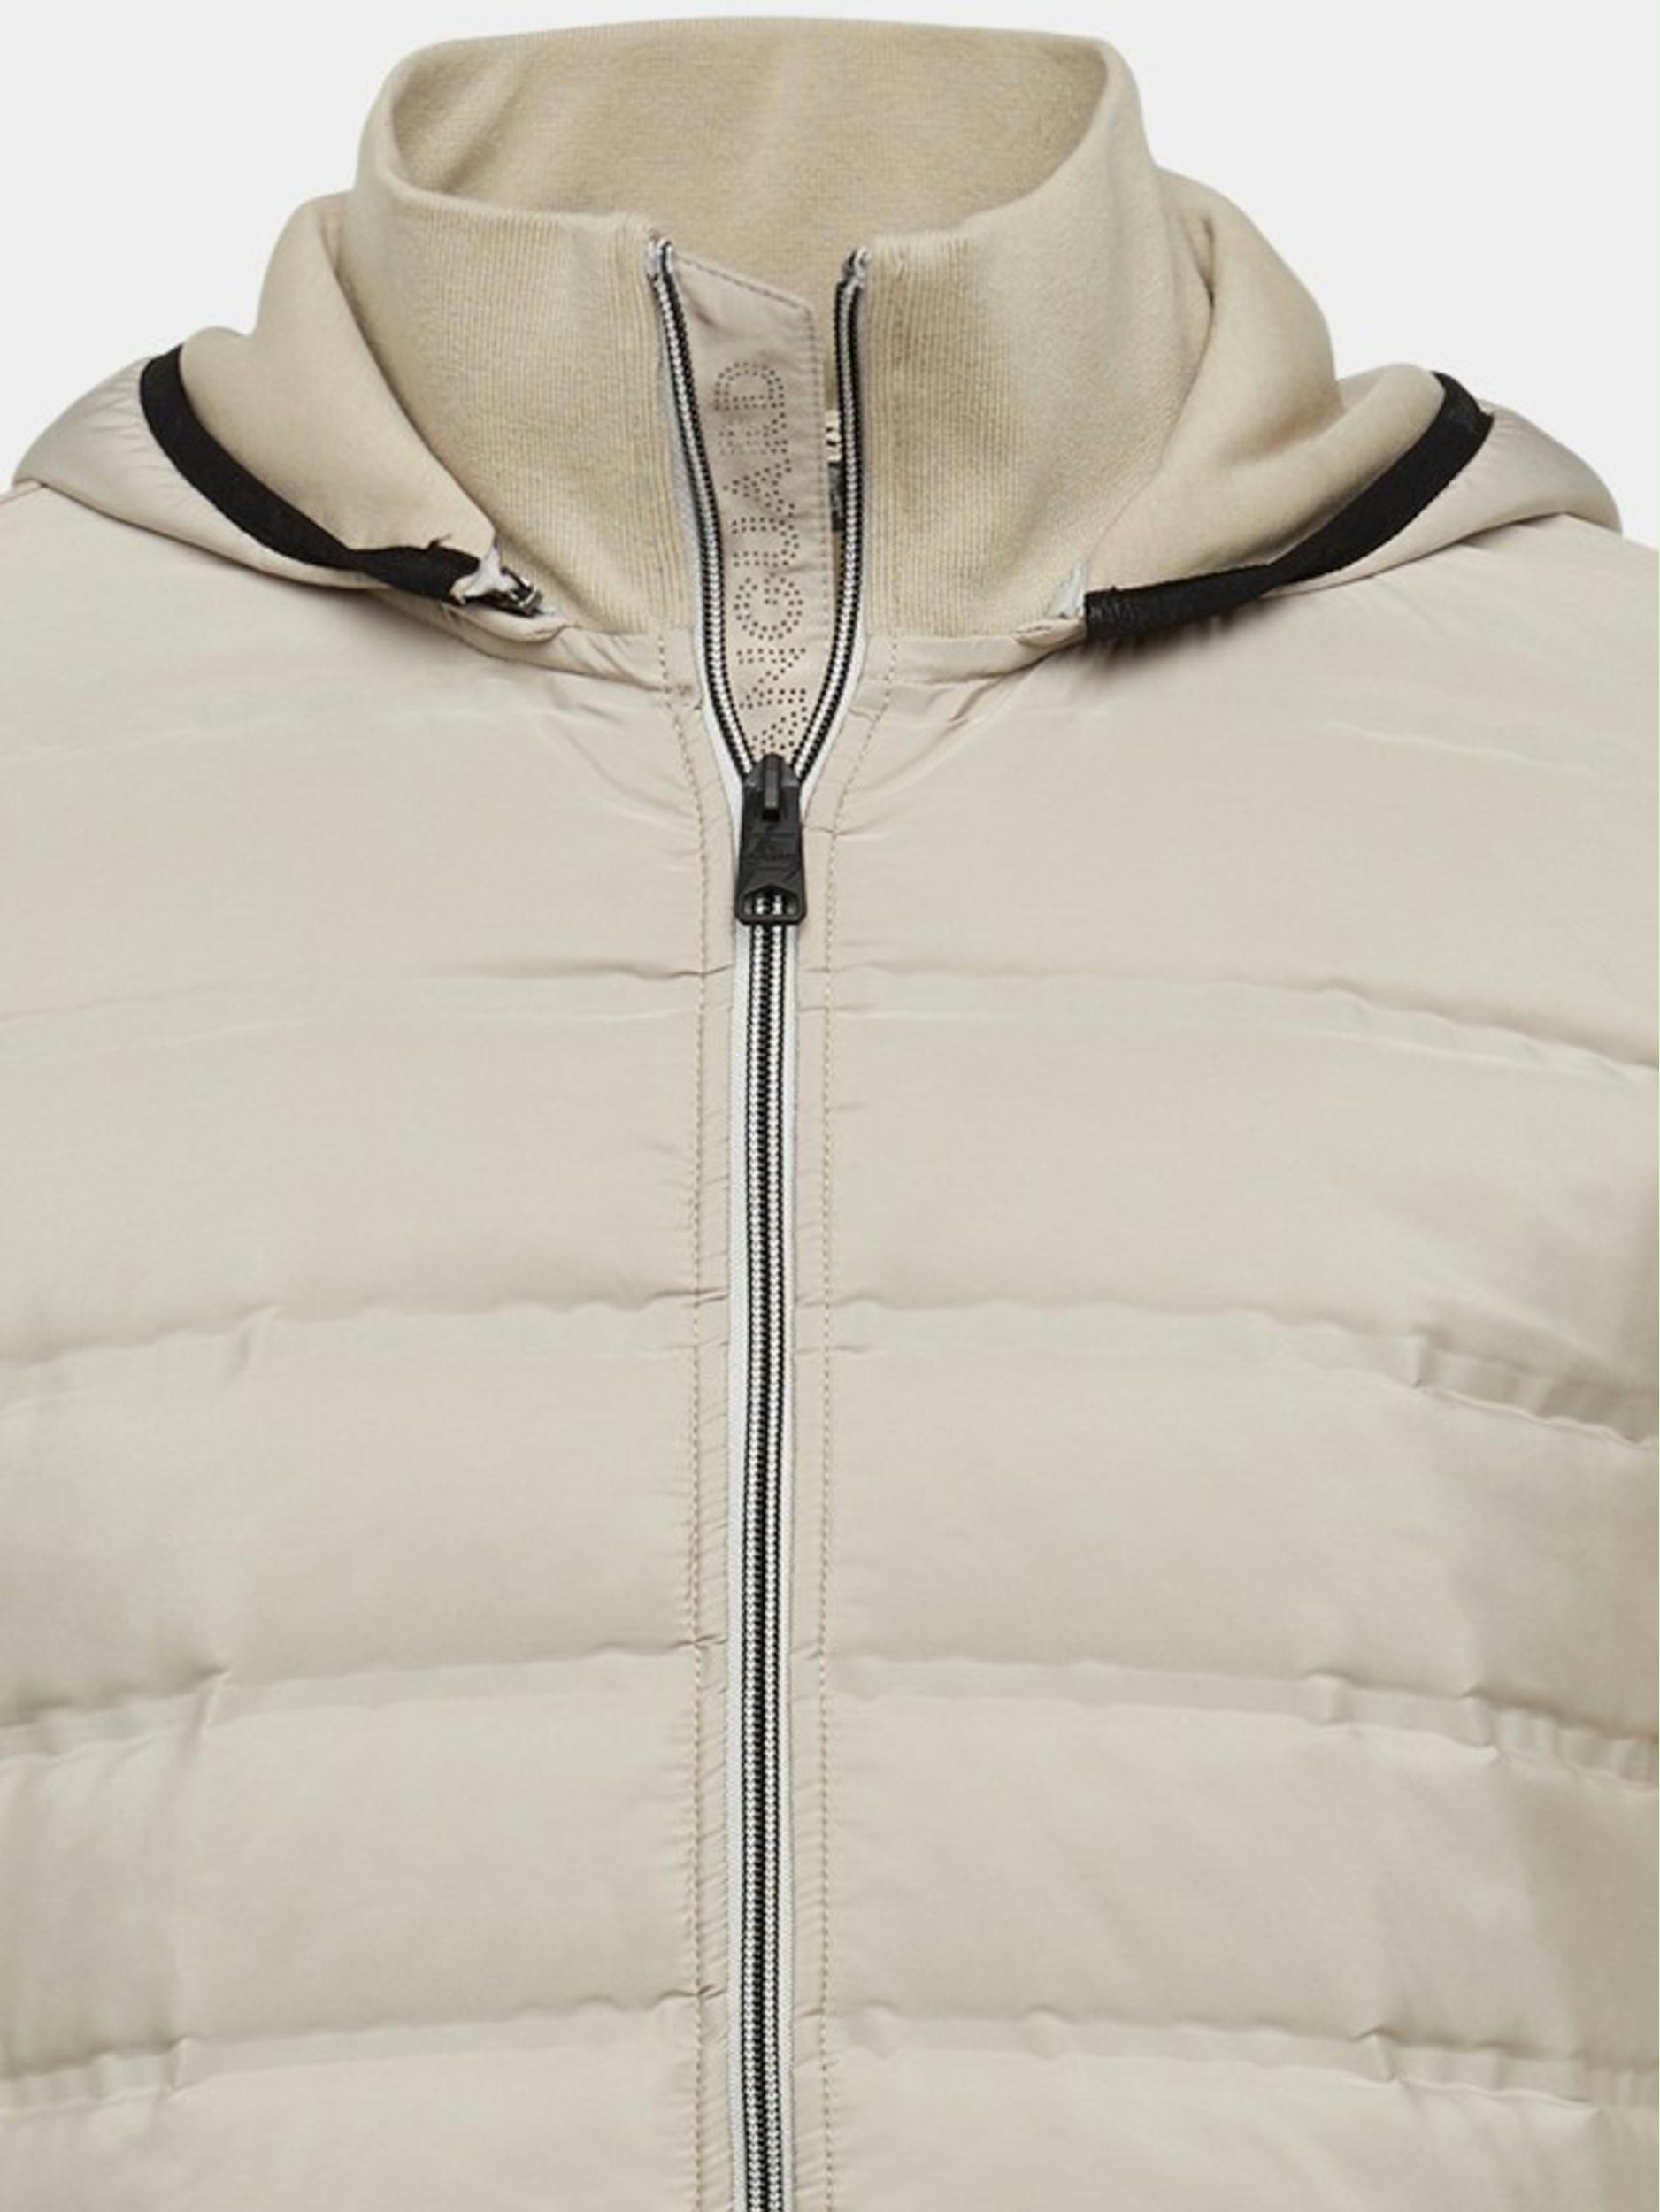 Vanguard Vest Beige Zip jacket interlock sweat VSW2211426/8265